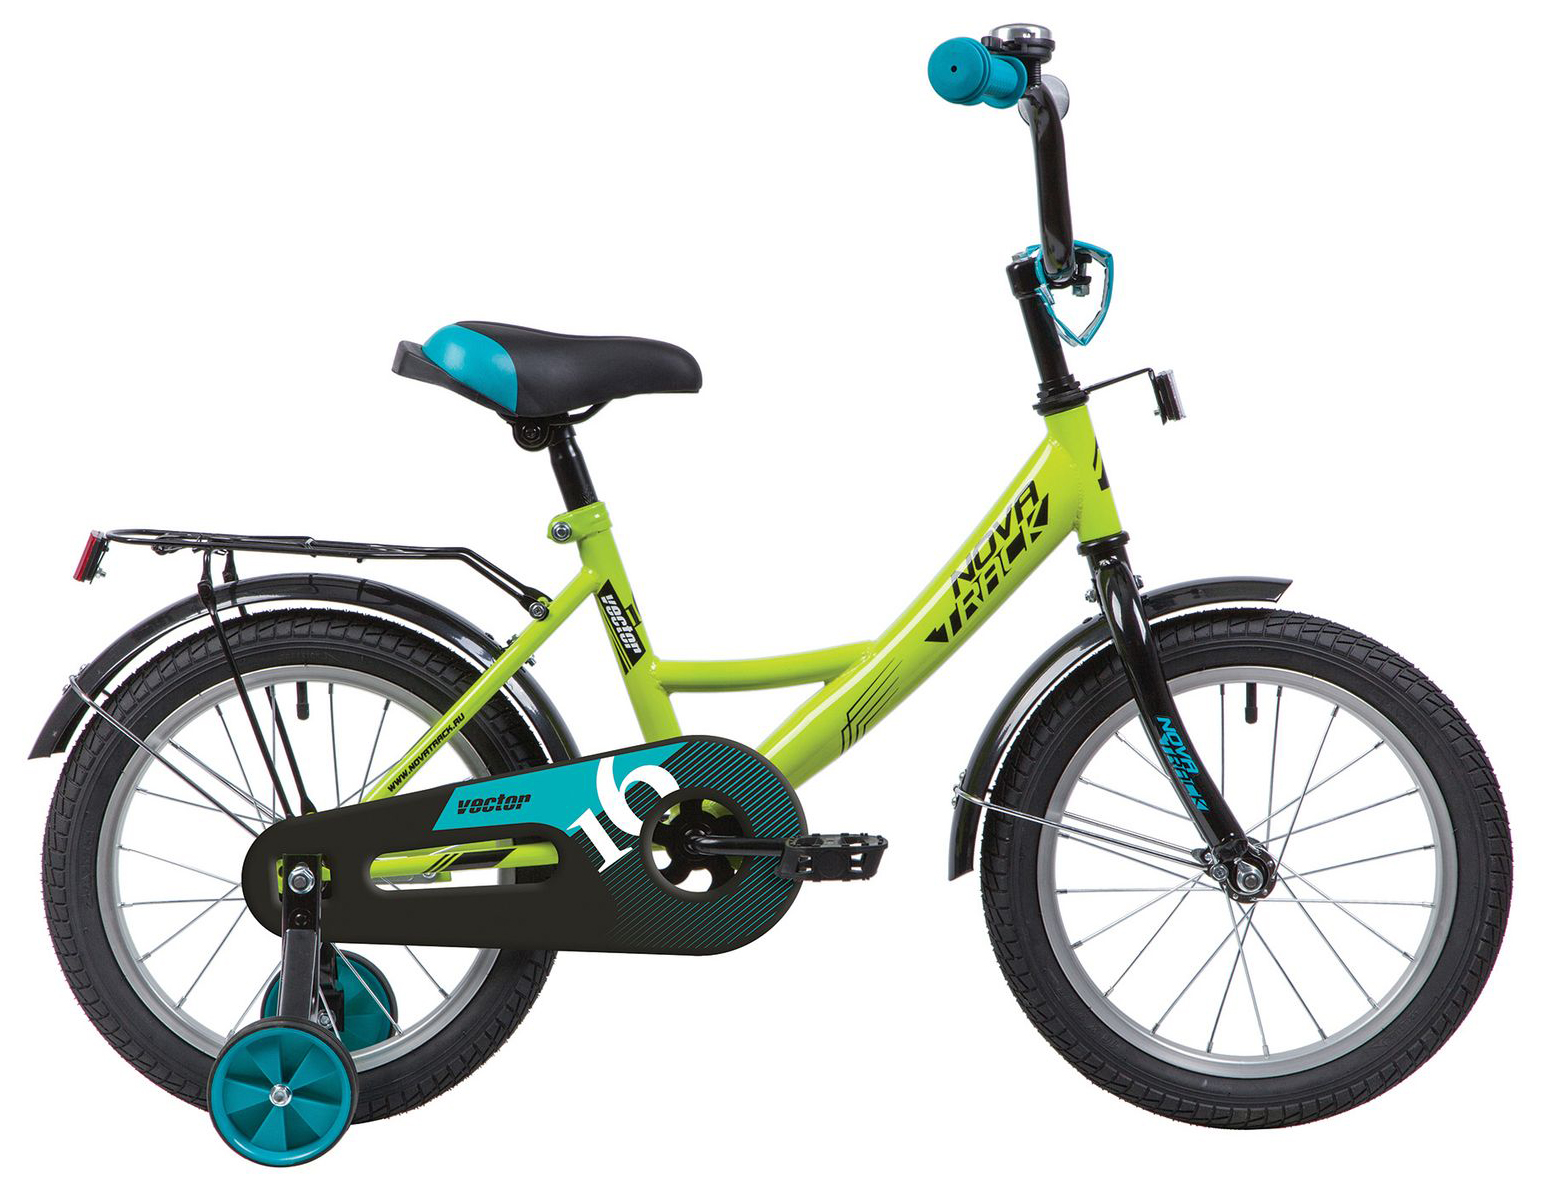  Отзывы о Детском велосипеде Novatrack Vector 14 2020